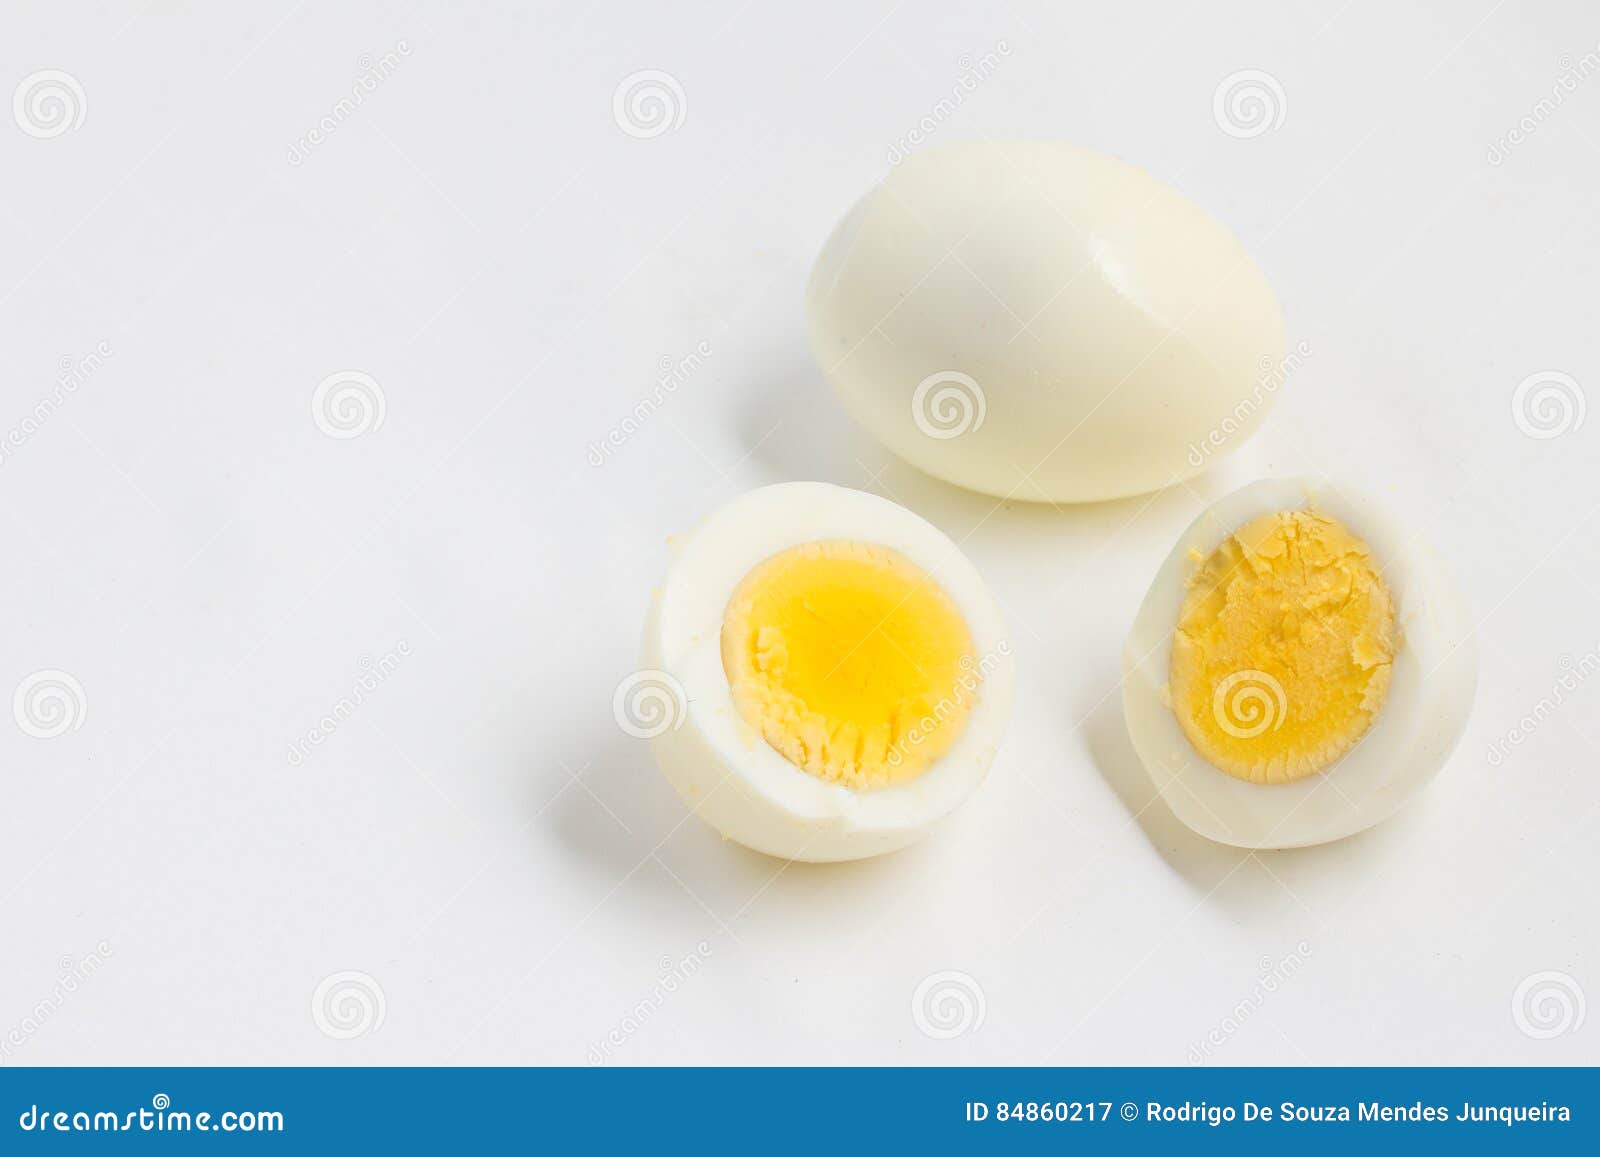 Можно ли греть яйцом. Можно ли ячмень греть вареным яйцом. Темные пятна на вареных яйцах. Как греть ячмень яйцом.